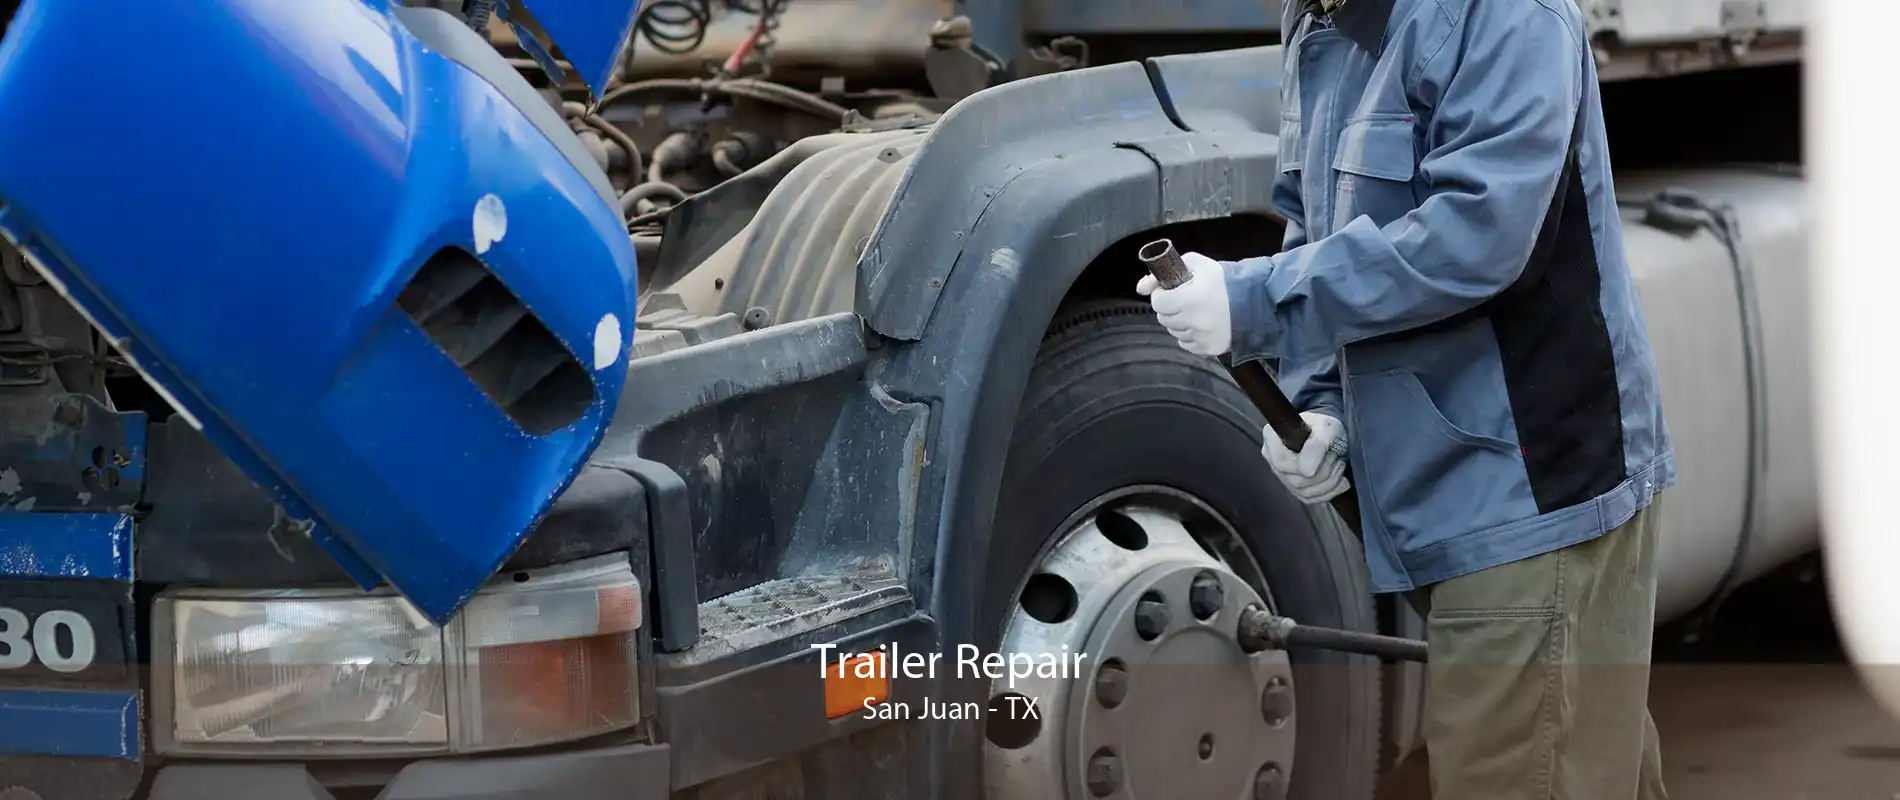 Trailer Repair San Juan - TX